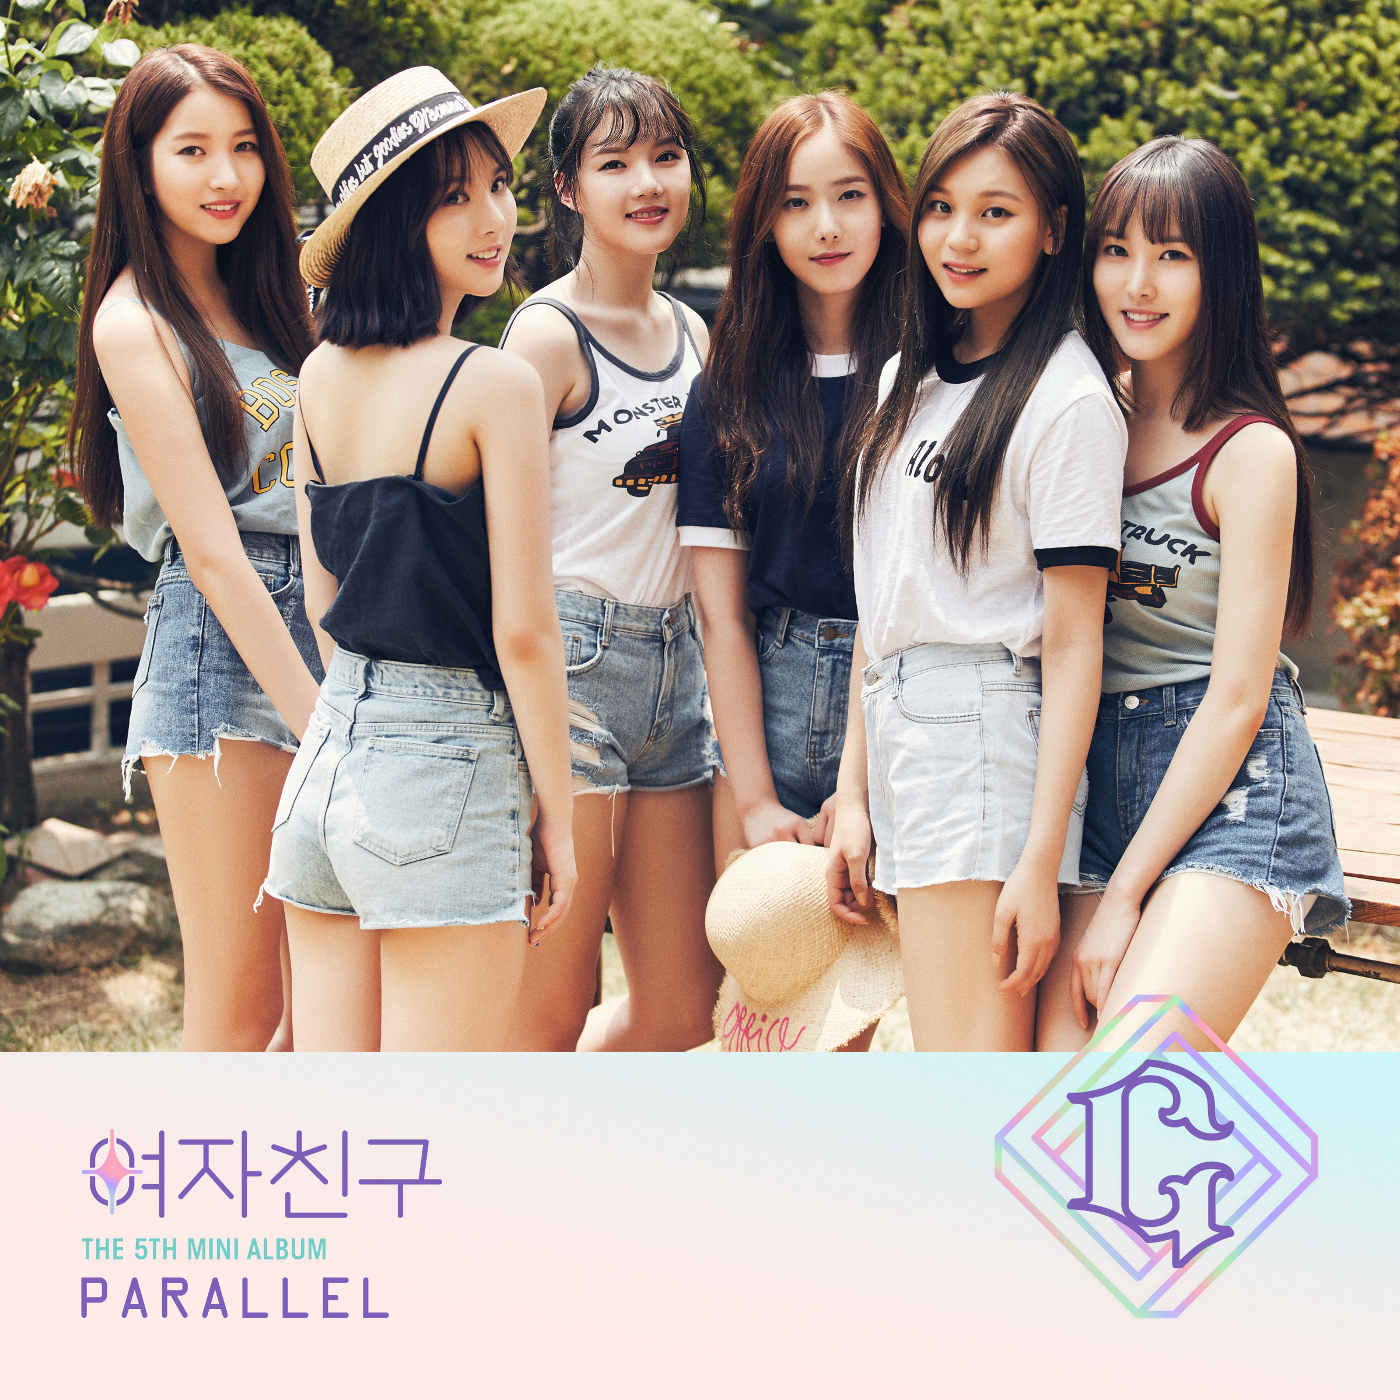 Parallel (GFRIEND) | Kpop Wiki | Fandom